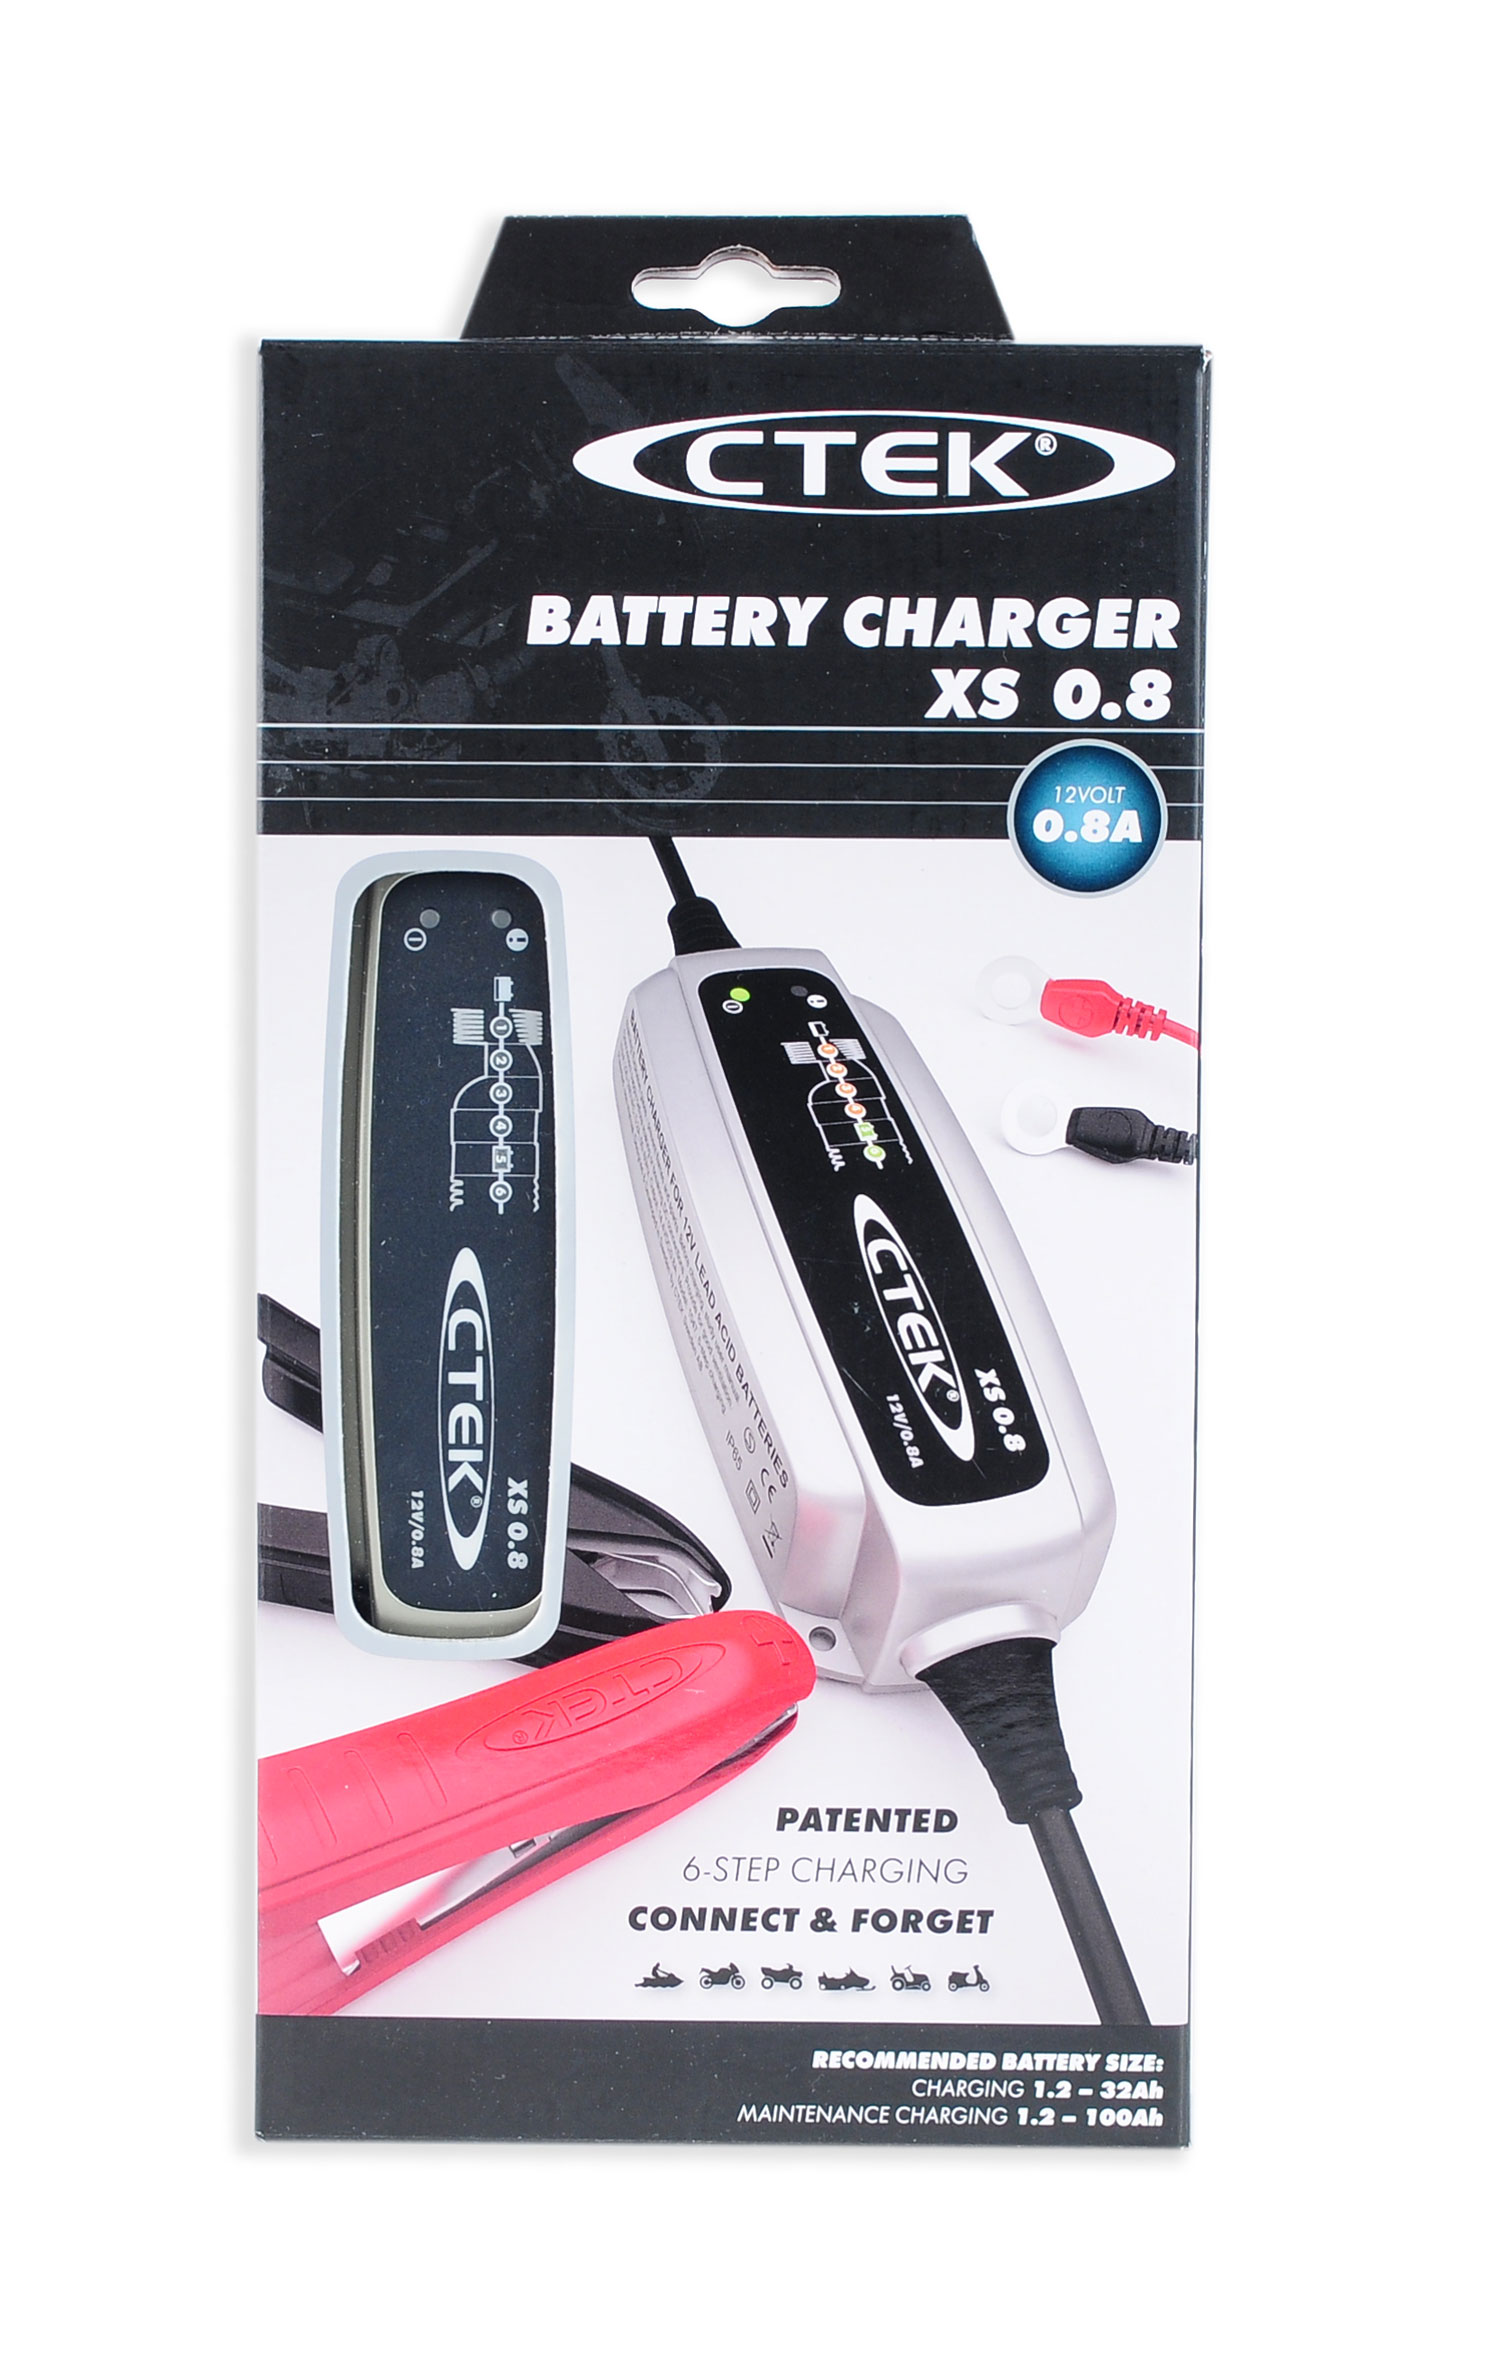 Ctek XS 0.8 12V 0,8A Batterieladegerät (56-707)